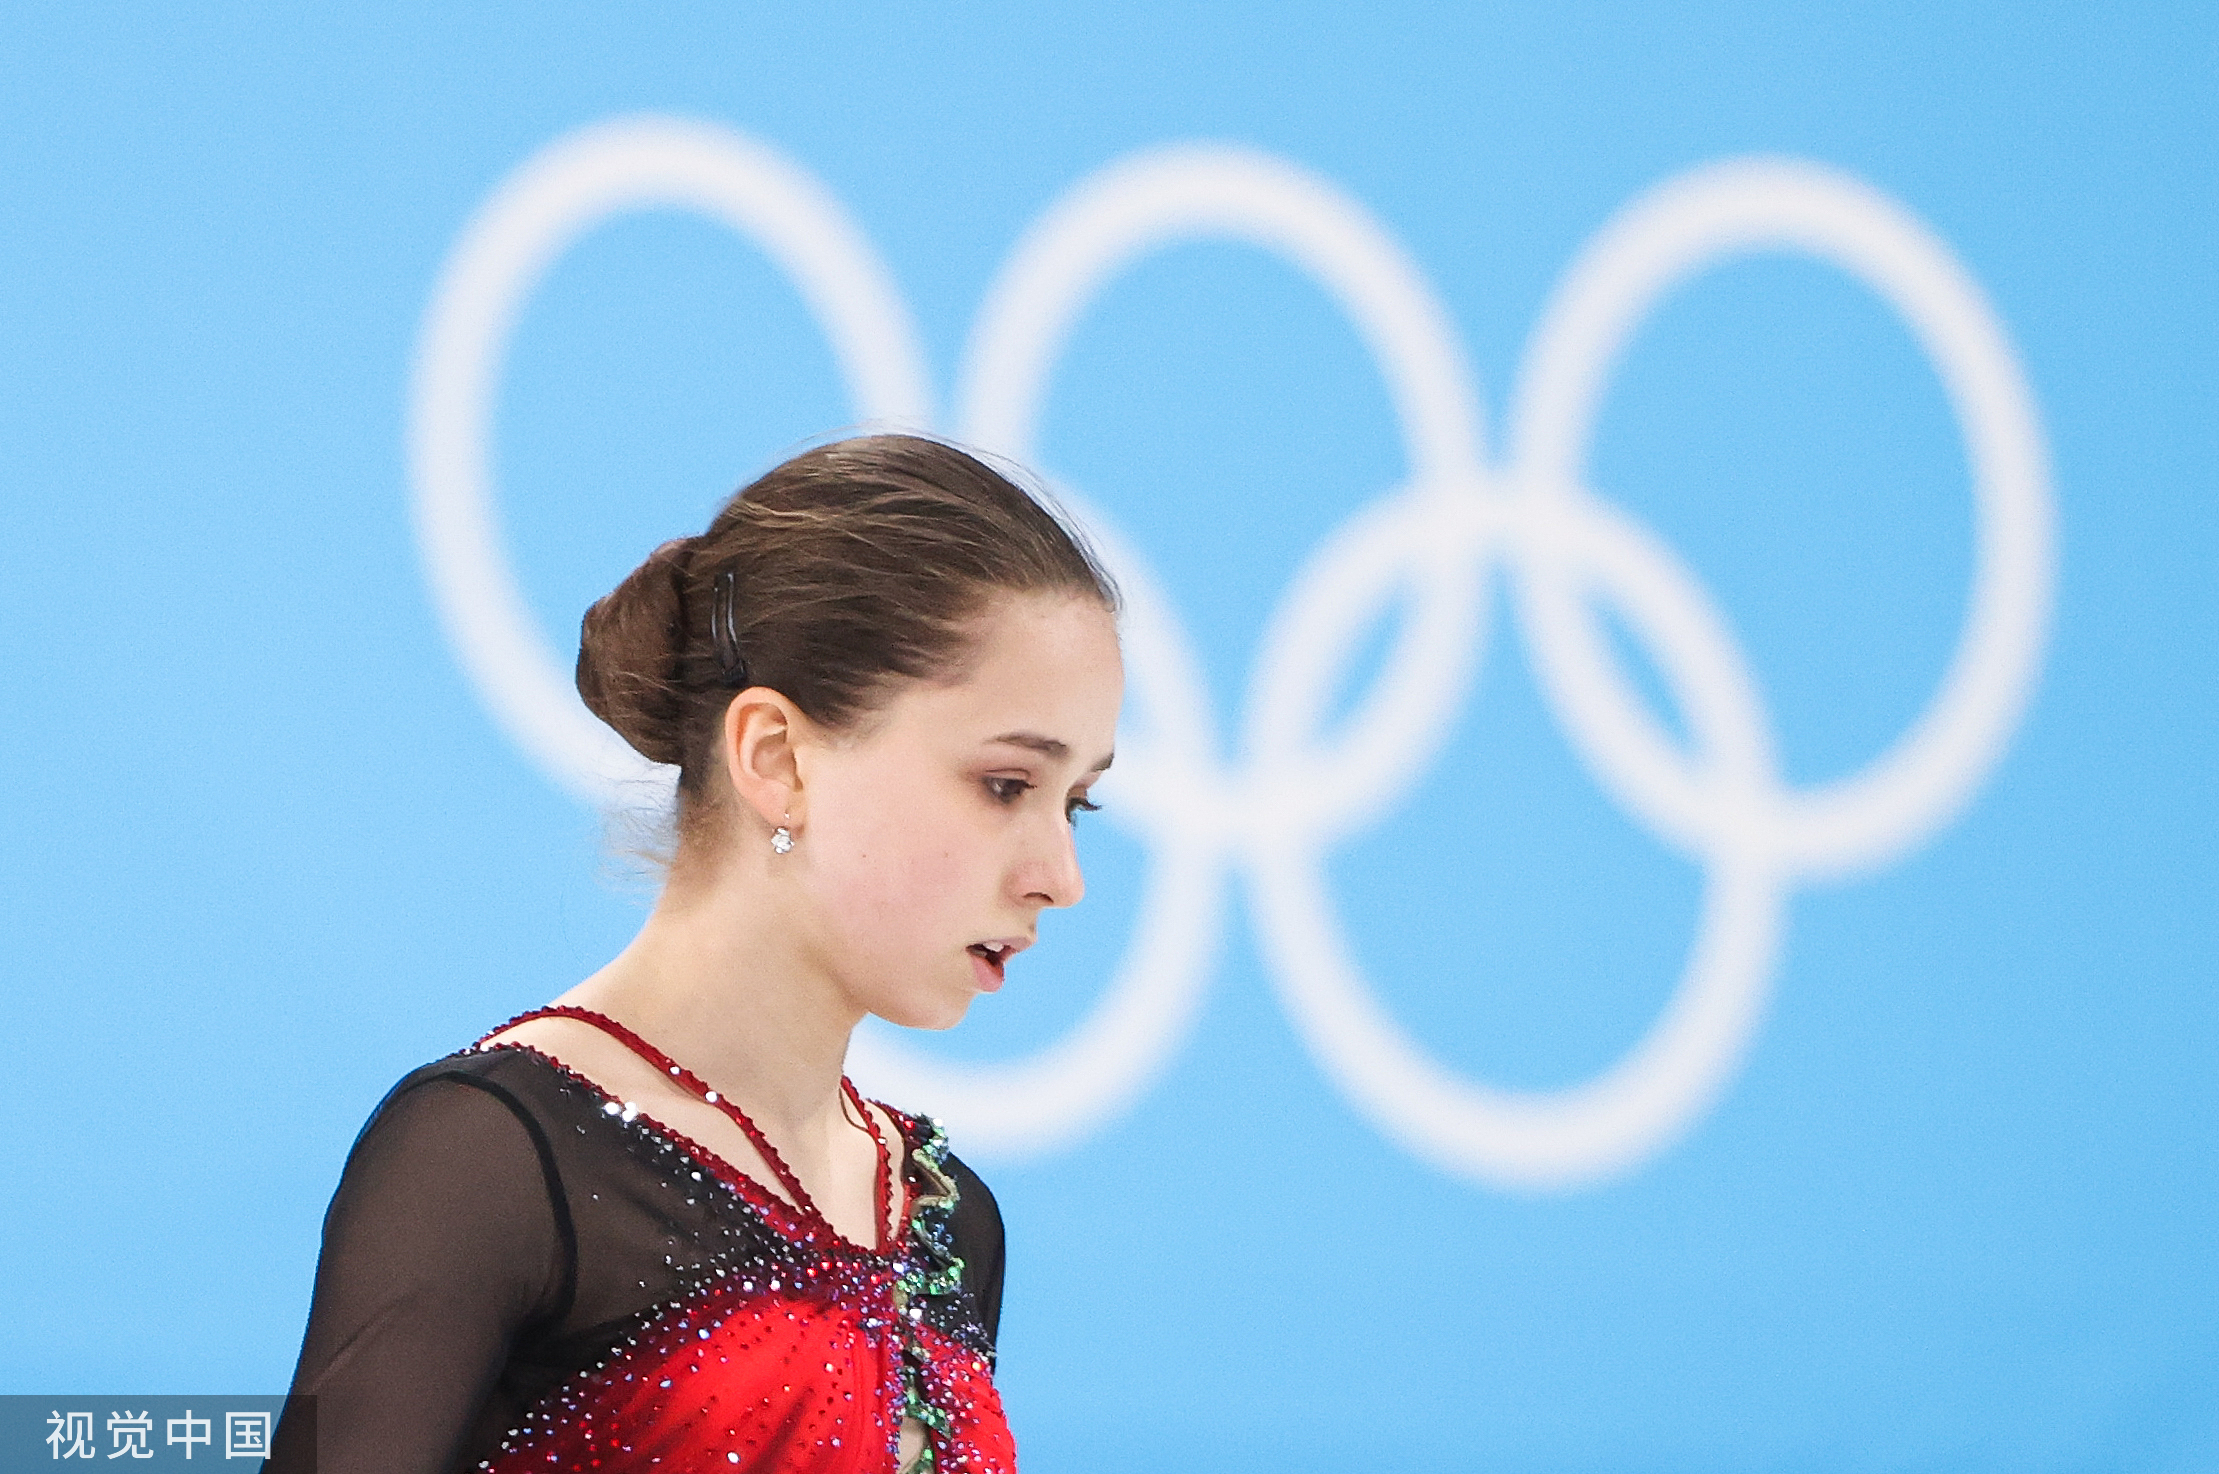 15岁的天才少女卡米拉·瓦利耶娃参加北京冬奥会。